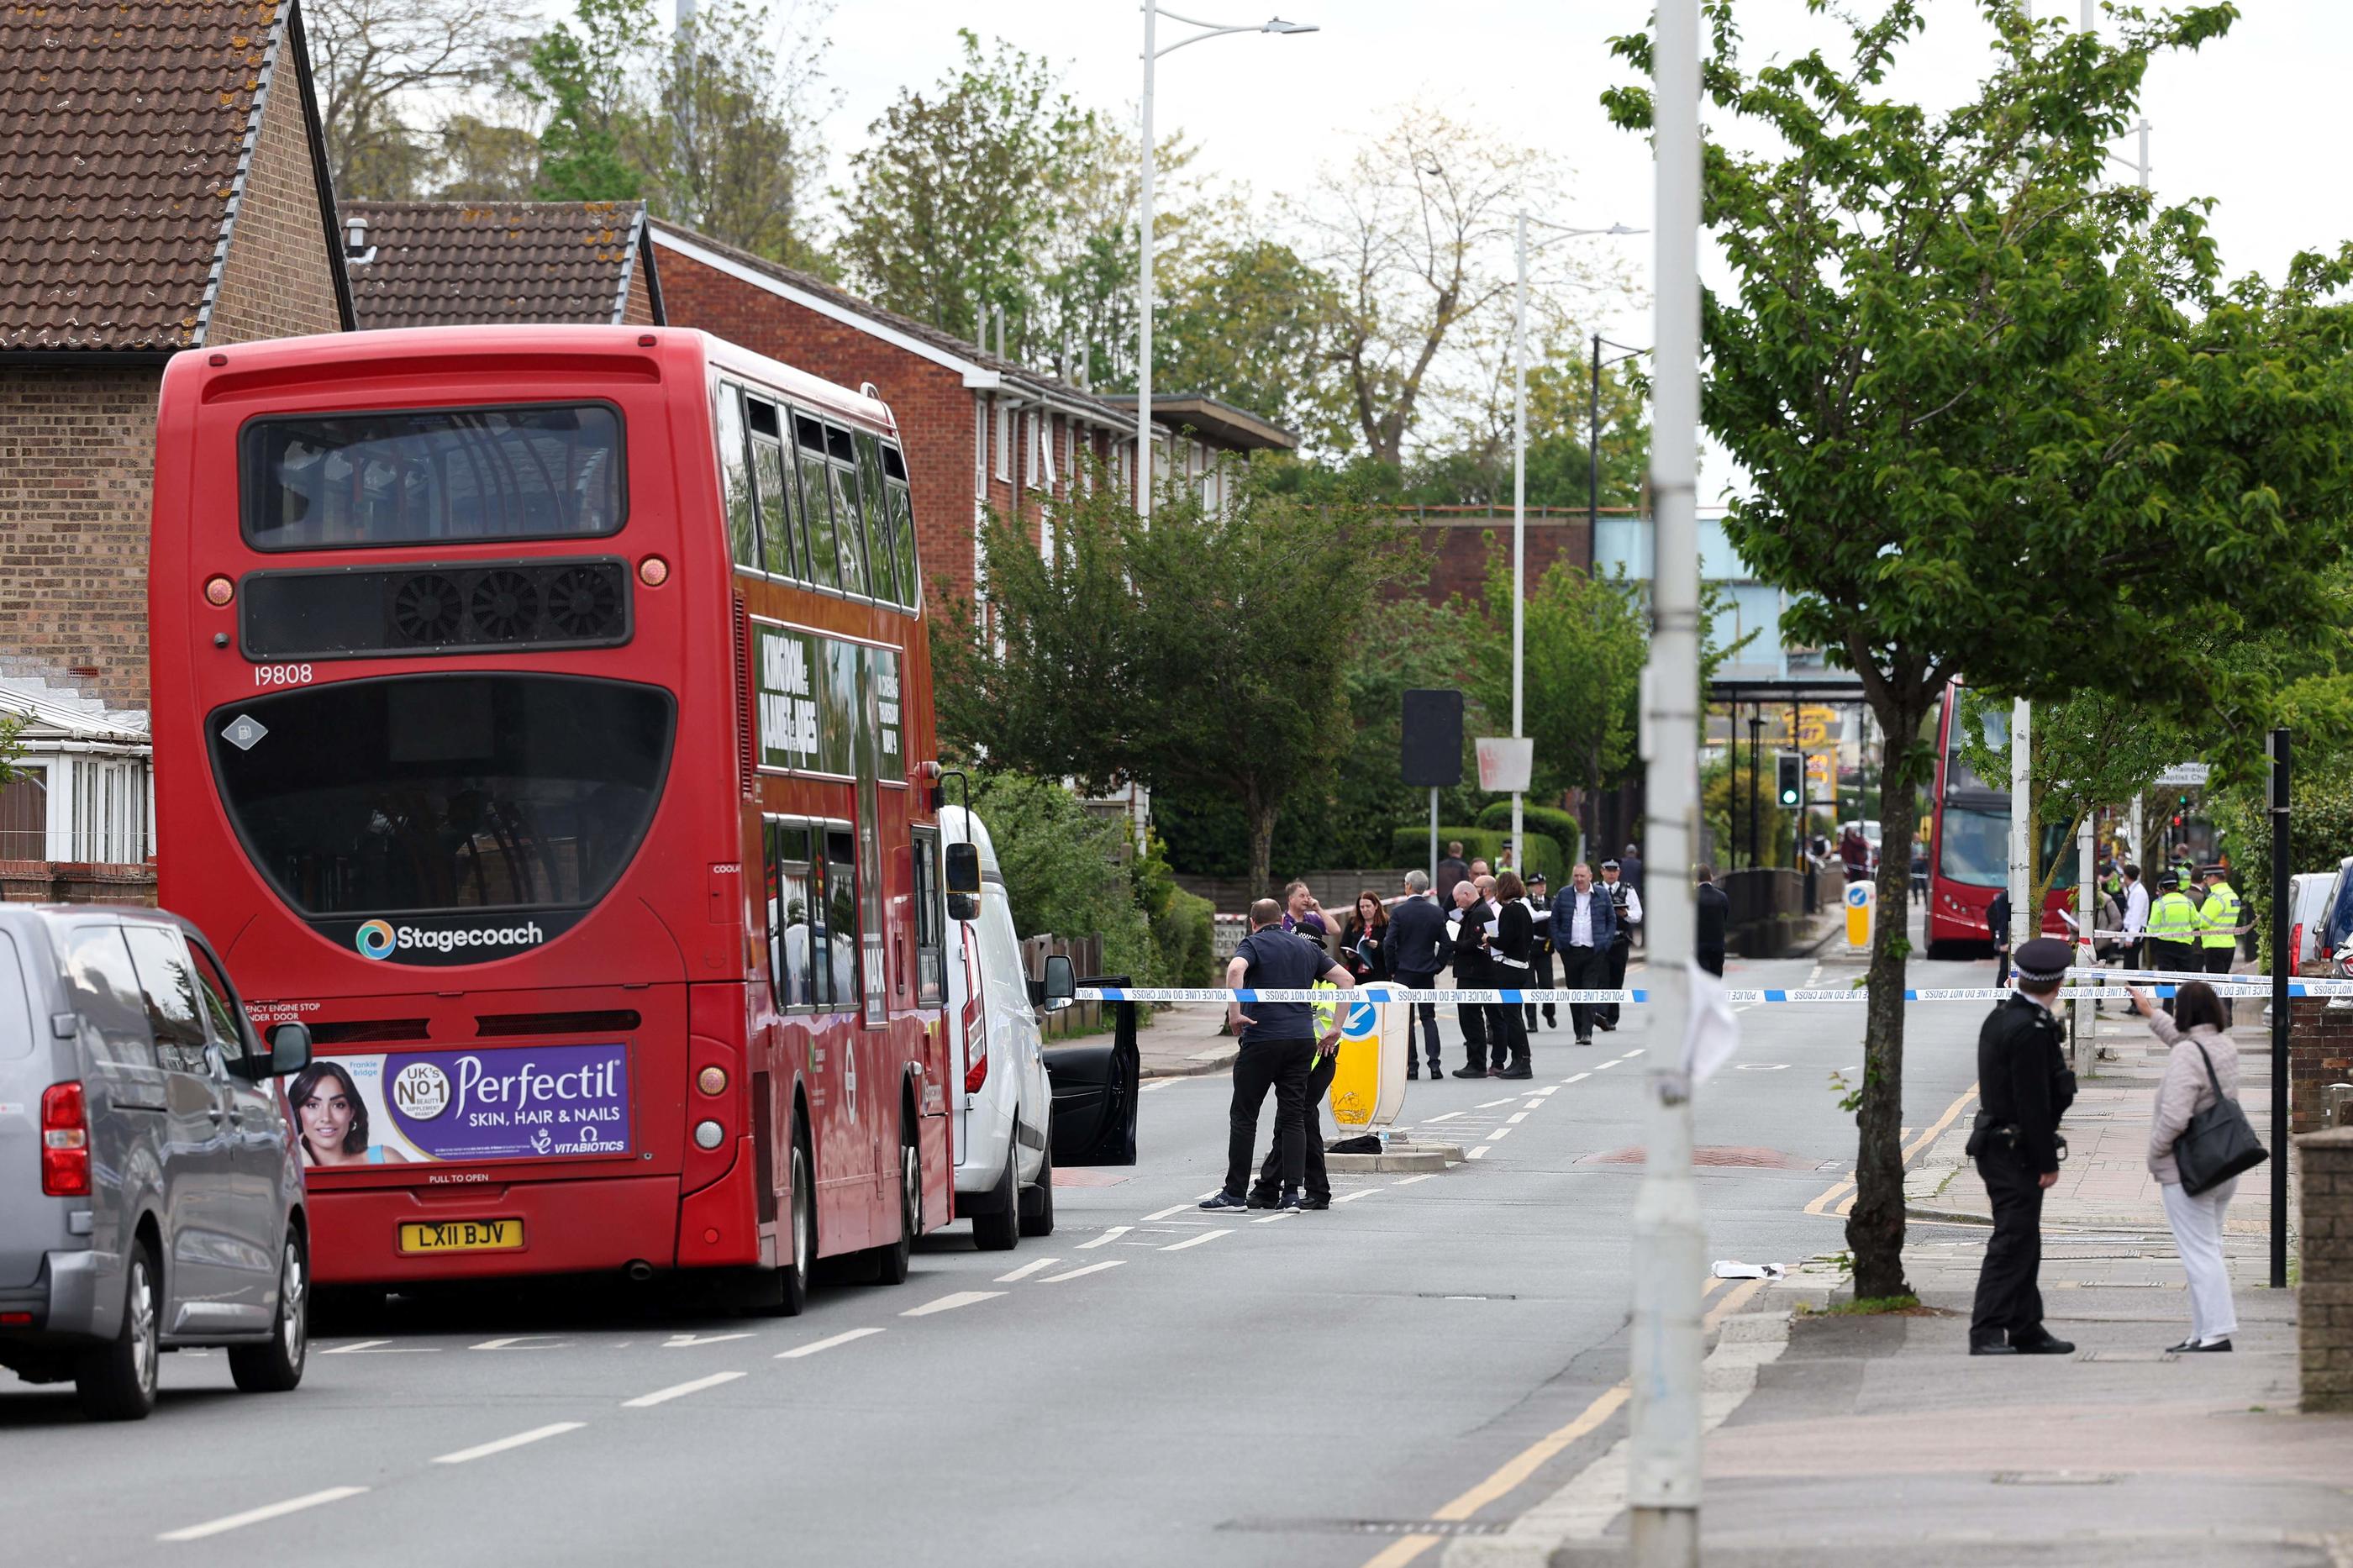 La police métropolitaine de Londres a bouclé le quartier autour de la station de métro du Hainault, où s'est passée l'attaque ce mardi matin. AFP/Adrian Dennis